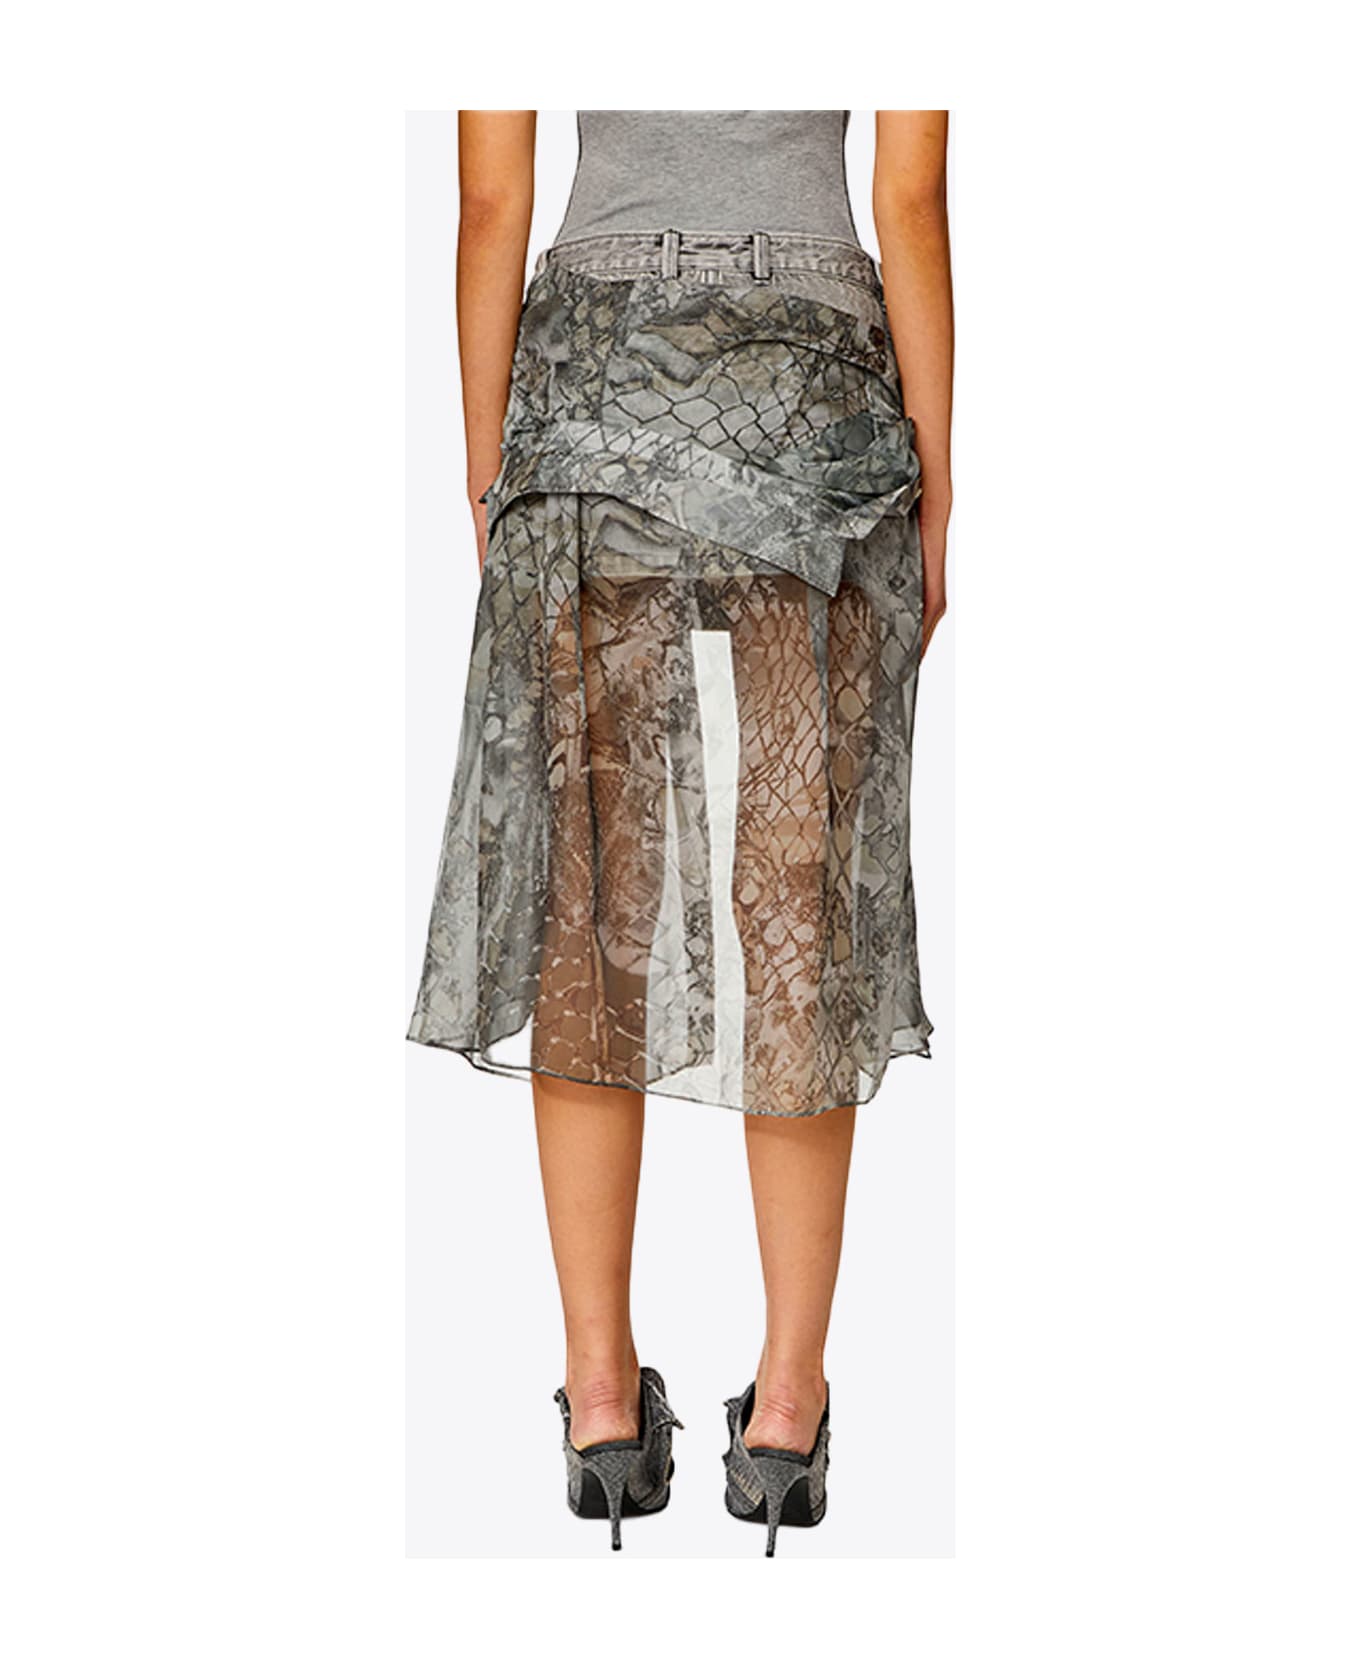 Diesel 0akaso-jeany Light grey denim skirt with knotted chiffon shirt - O Jeany - Denim grigio